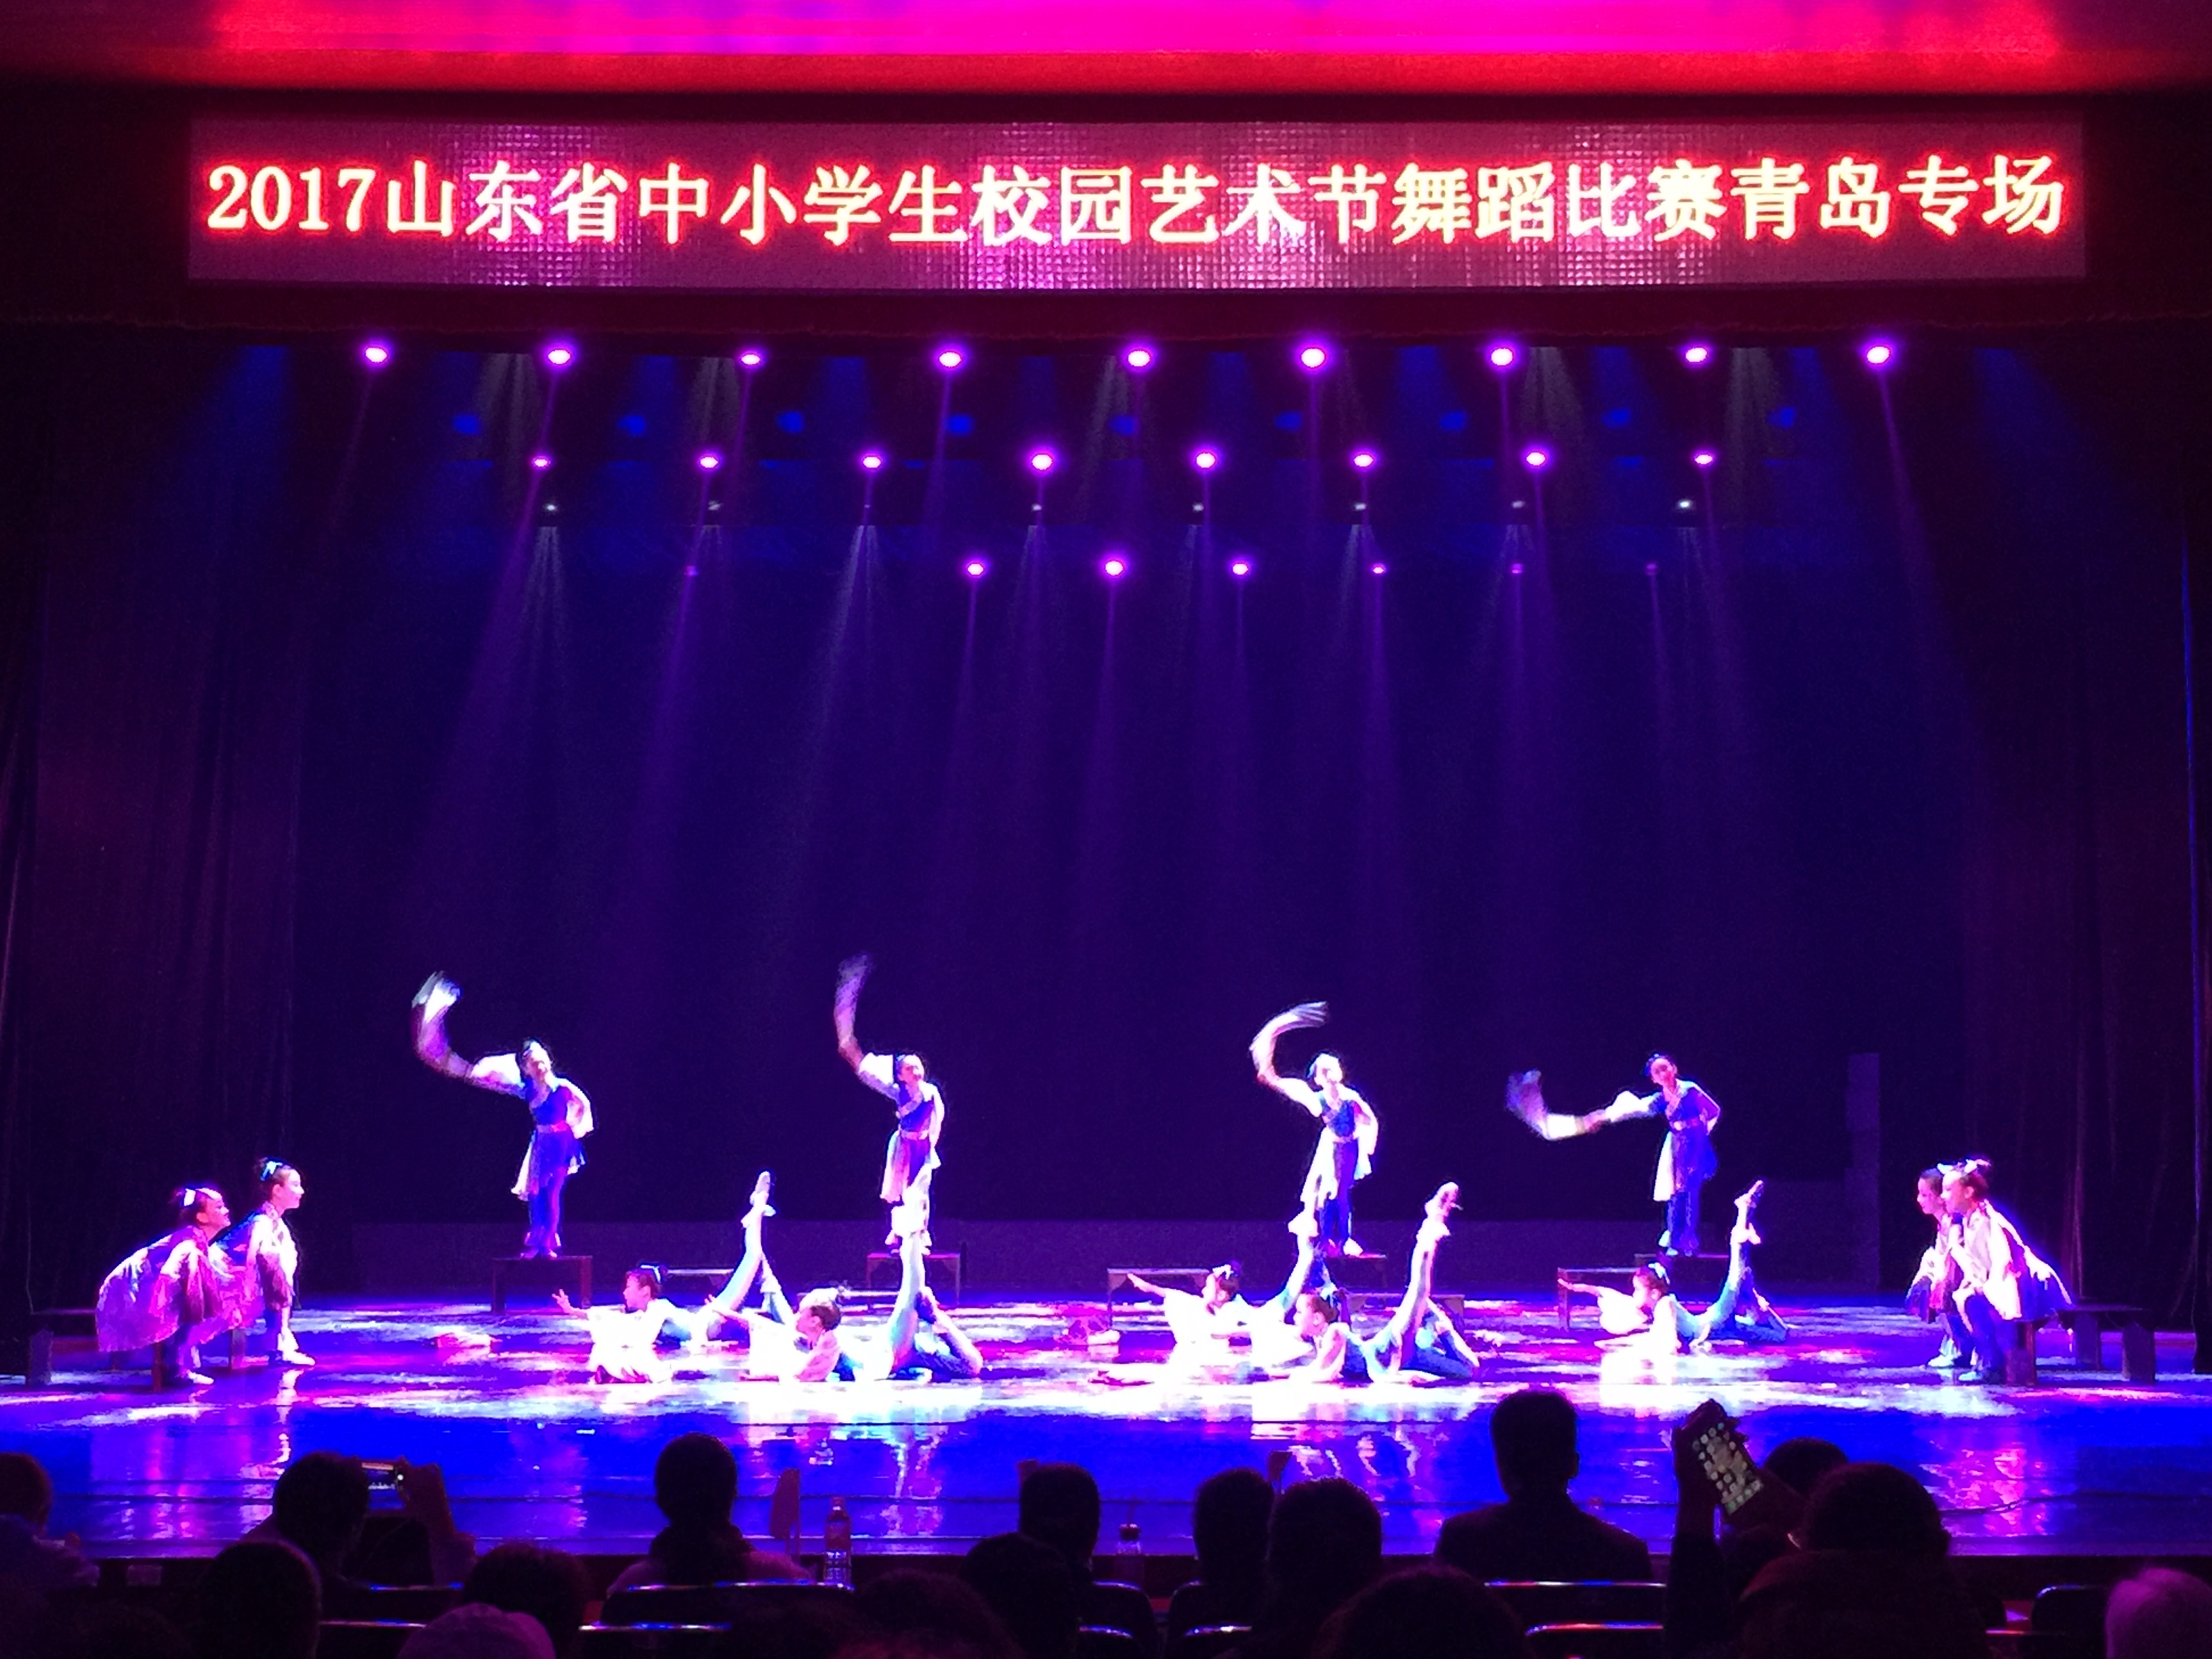 舞蹈團獲得山東省中小學生藝術節舞蹈比賽一等獎